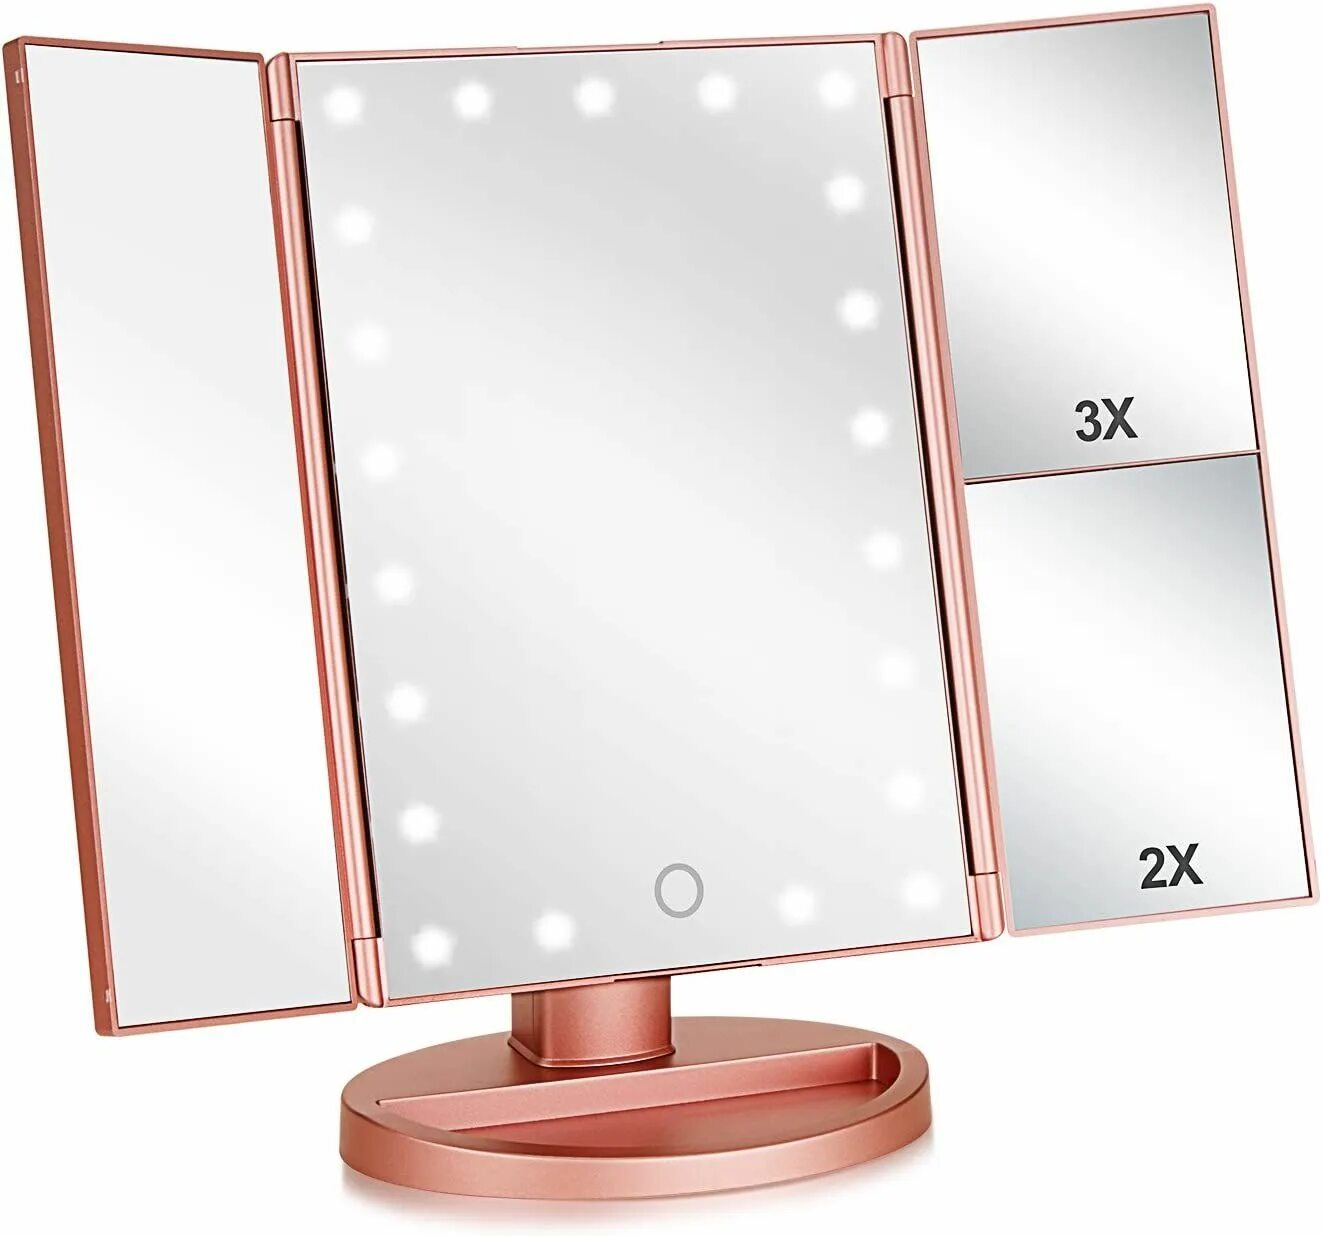 Зеркало для макияжа с led подсветкой Superstar Magnifying Mirror. Зеркало косметическое настольное Superstar tri-folded с подсветкой. NAC-513 косметическое зеркало с подсветкой Superstar Magnifying Mirror. Led Cosmetic Mirror зеркало с подсветкой.